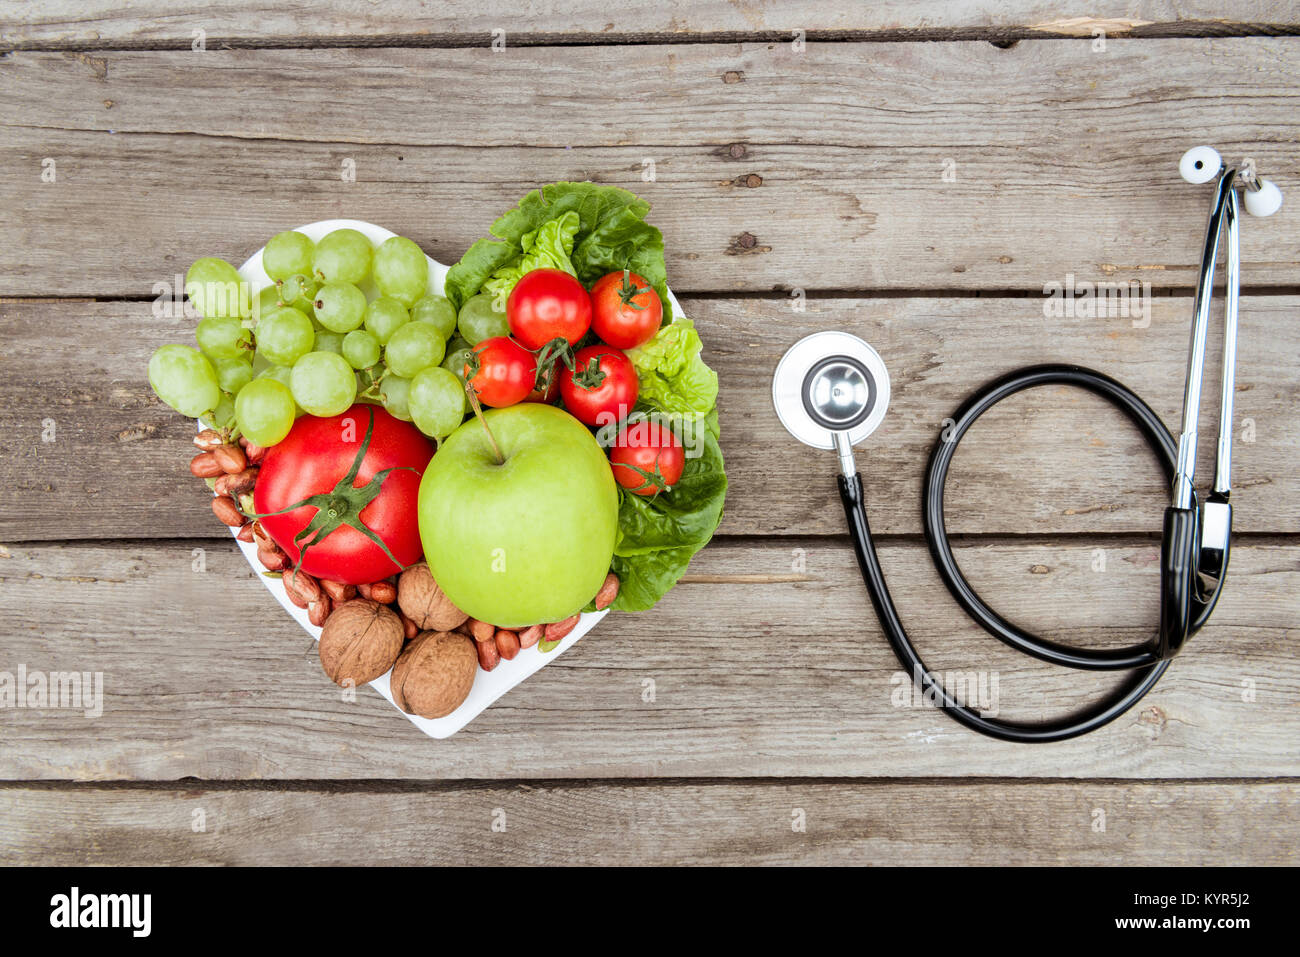 Vista dall'alto di carni varie verdure e frutta e uno stetoscopio sul tavolo di legno, mangiare sano concetto Foto Stock